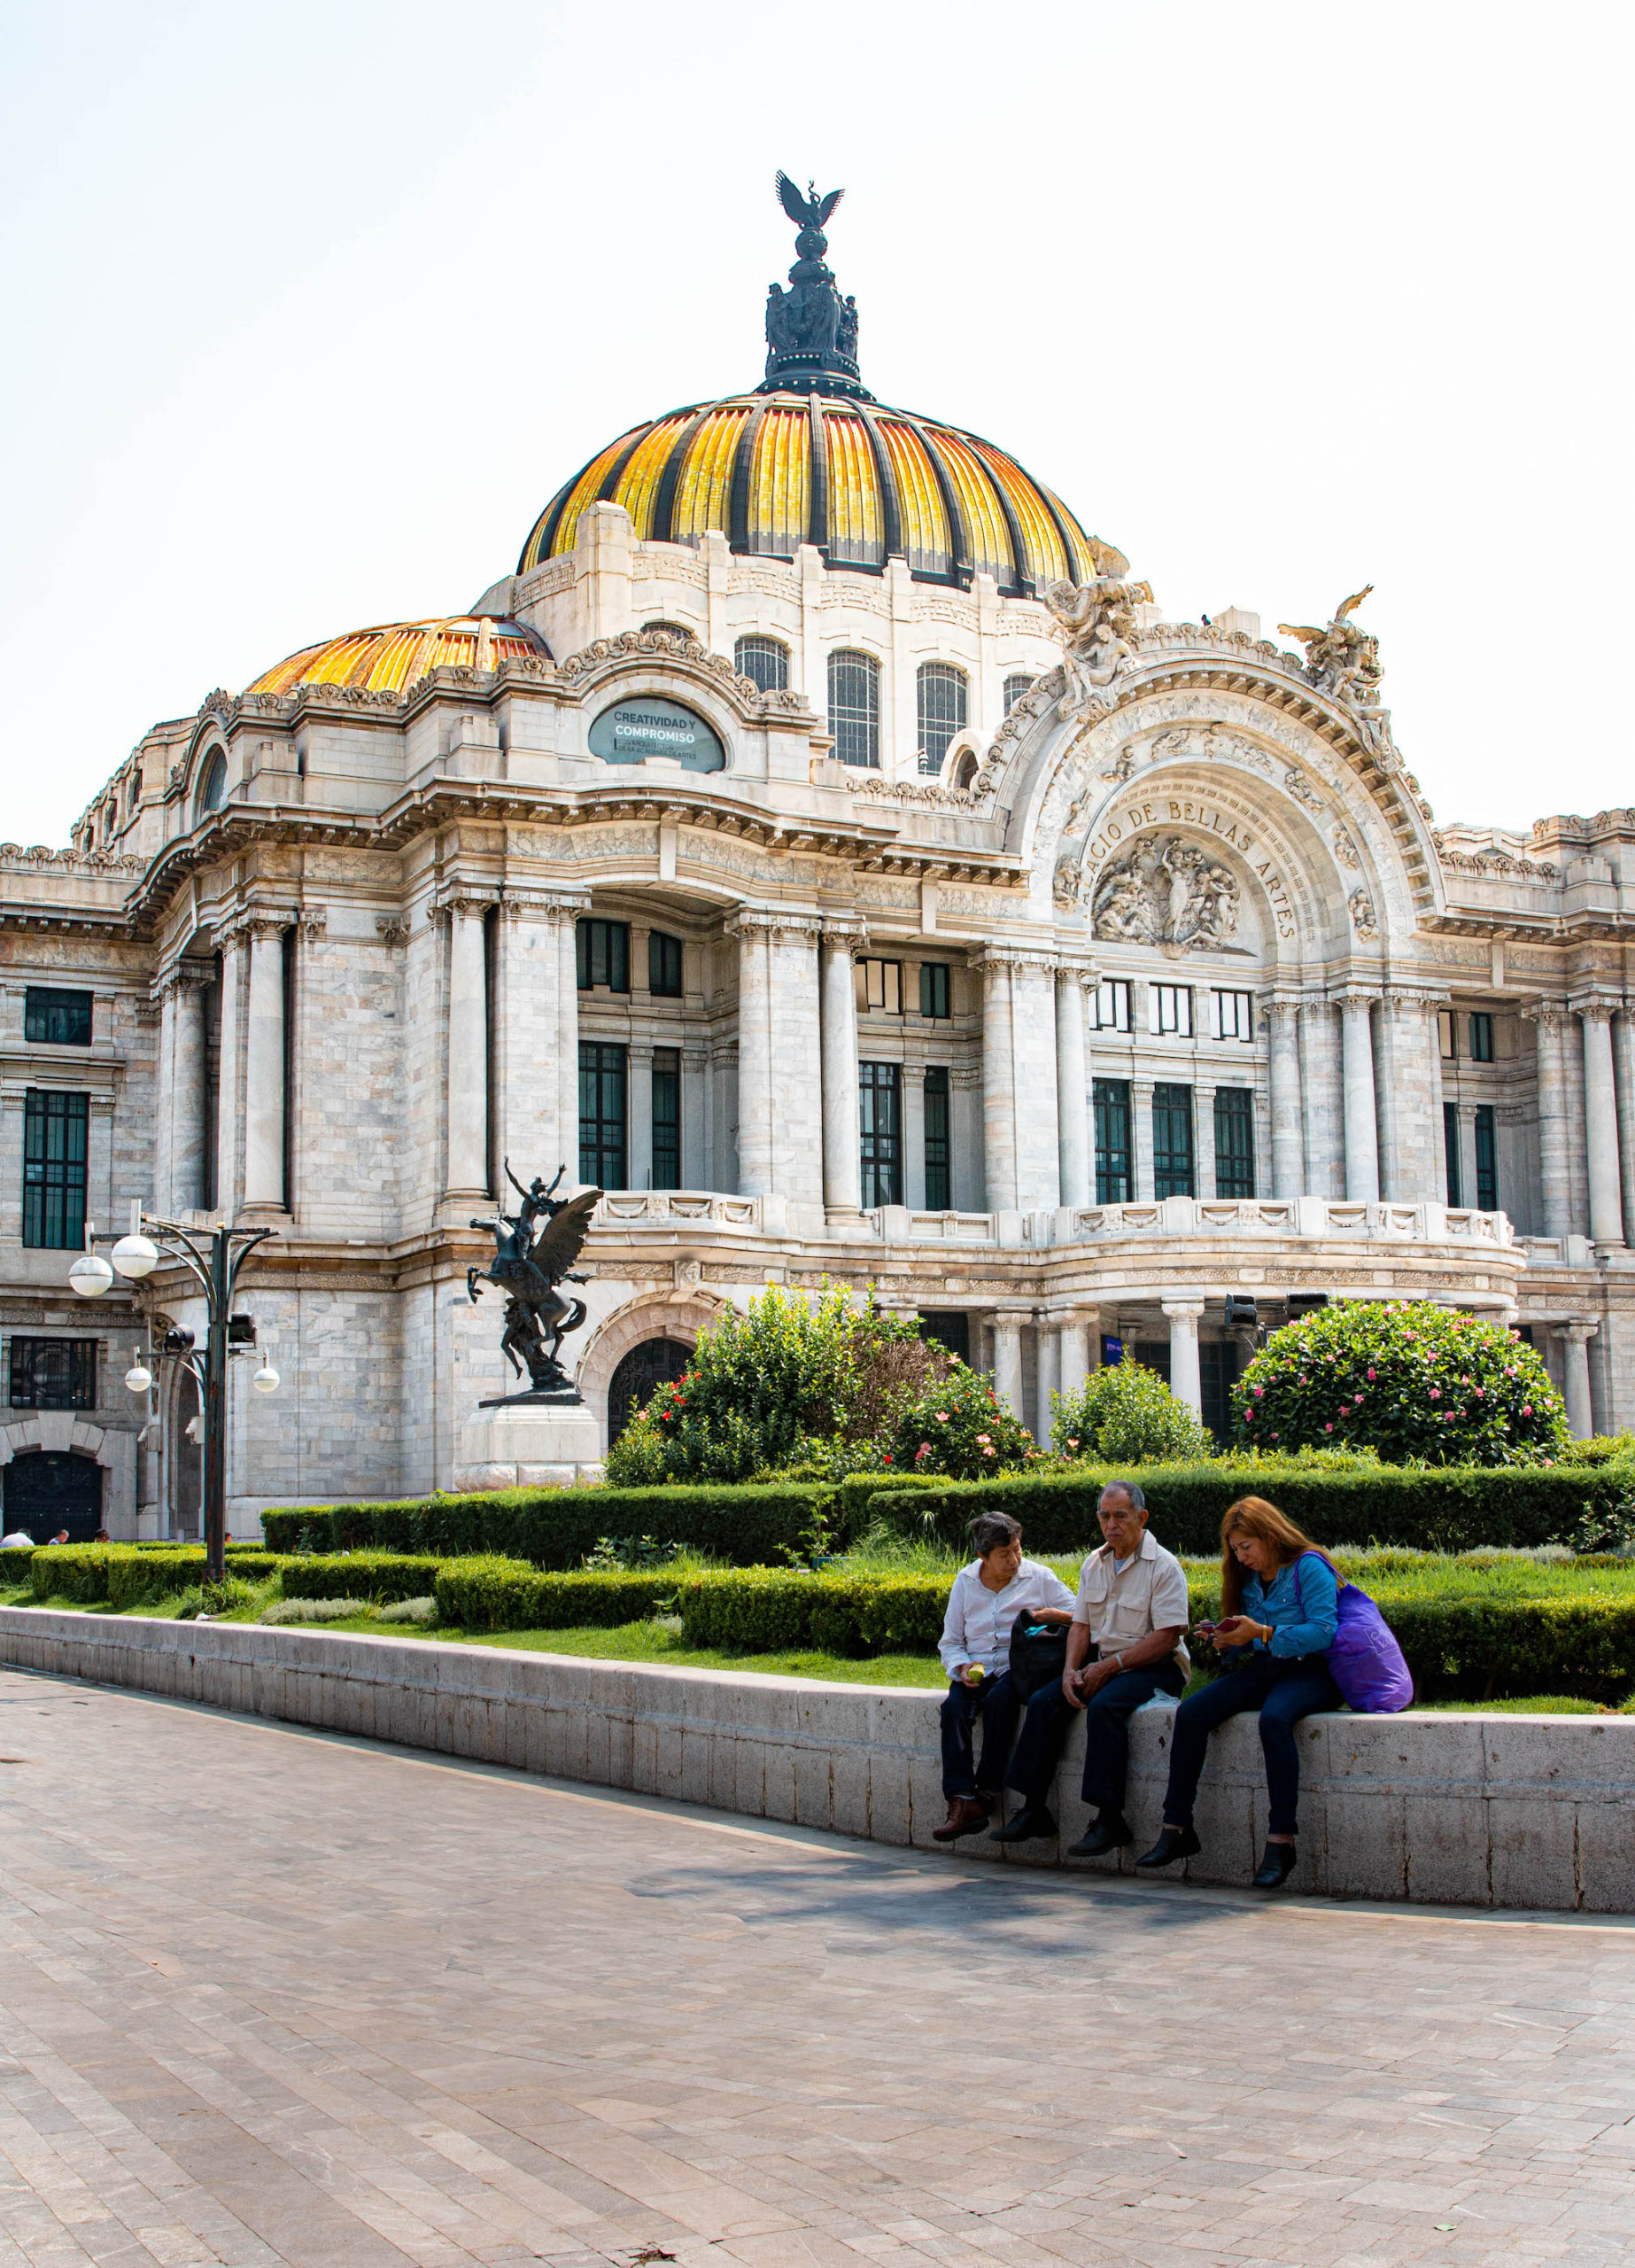 Palacio de Bellas Artes, one of many must-visit museums in Mexico city, CDMX